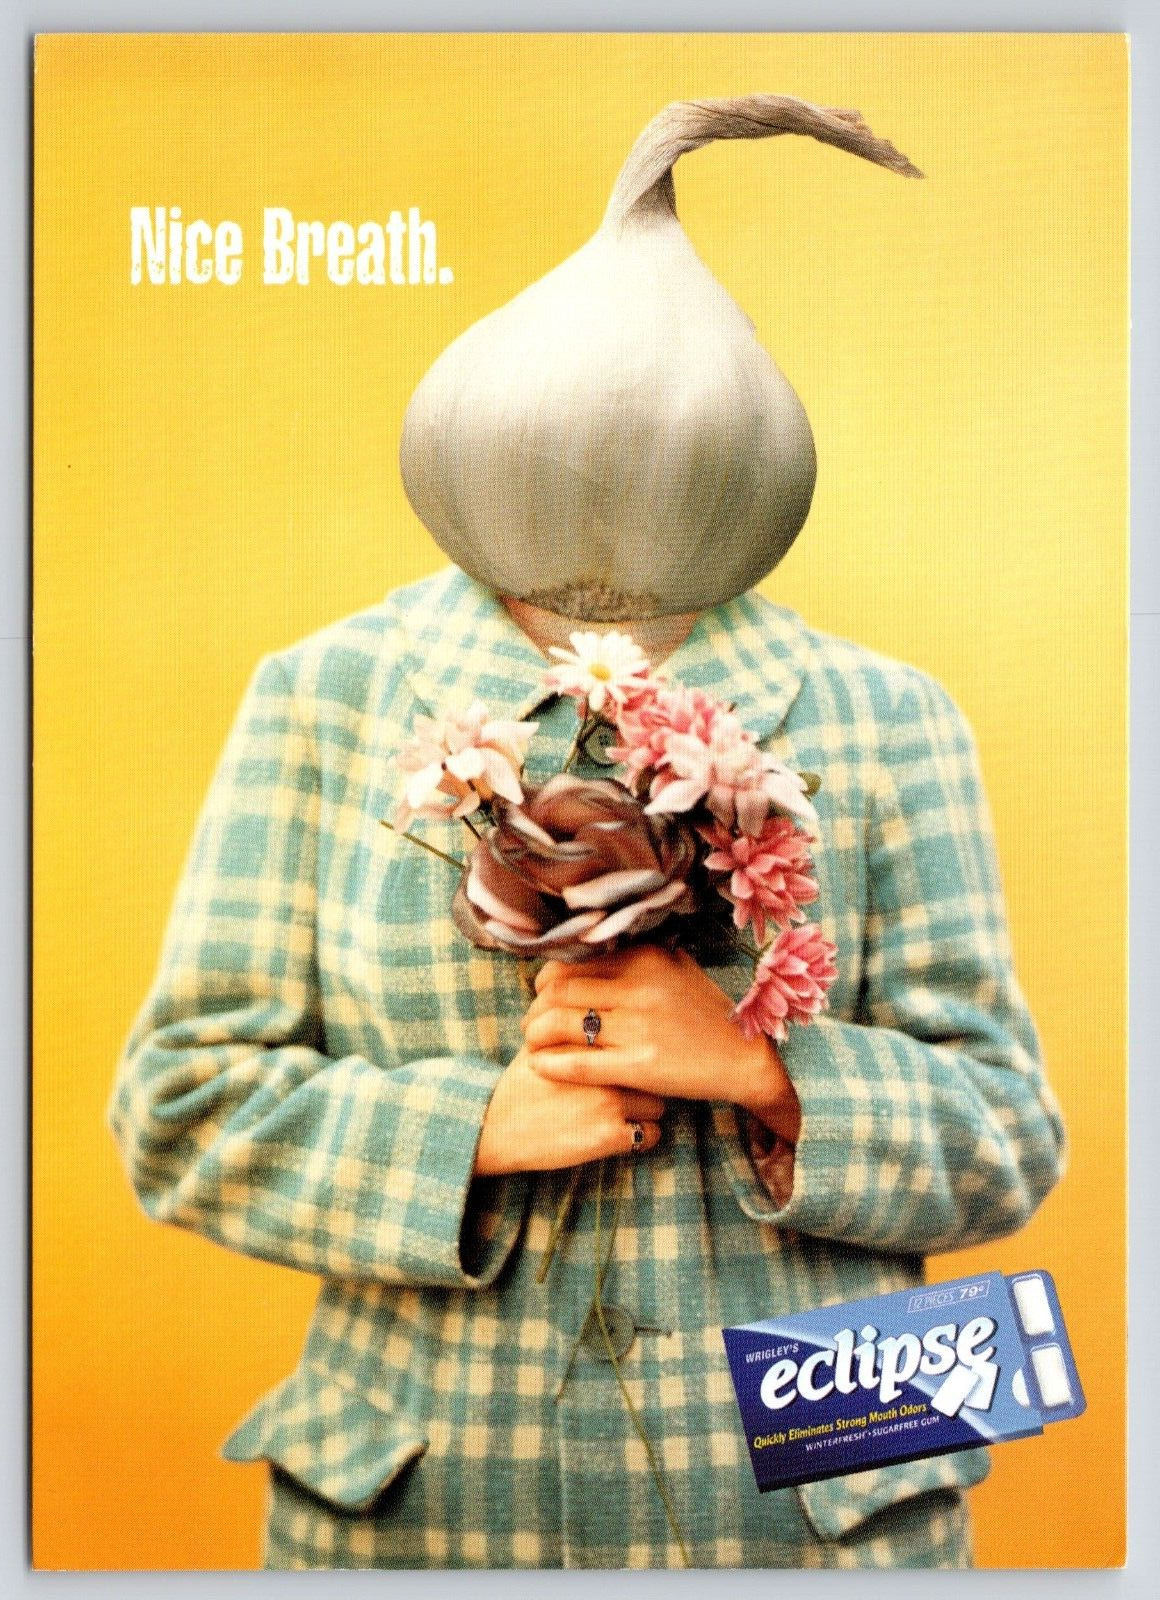 Groovy Suit Garlic Head Bad Breath Man Flower Eclipse Sugar Free Gum Ad Postcard